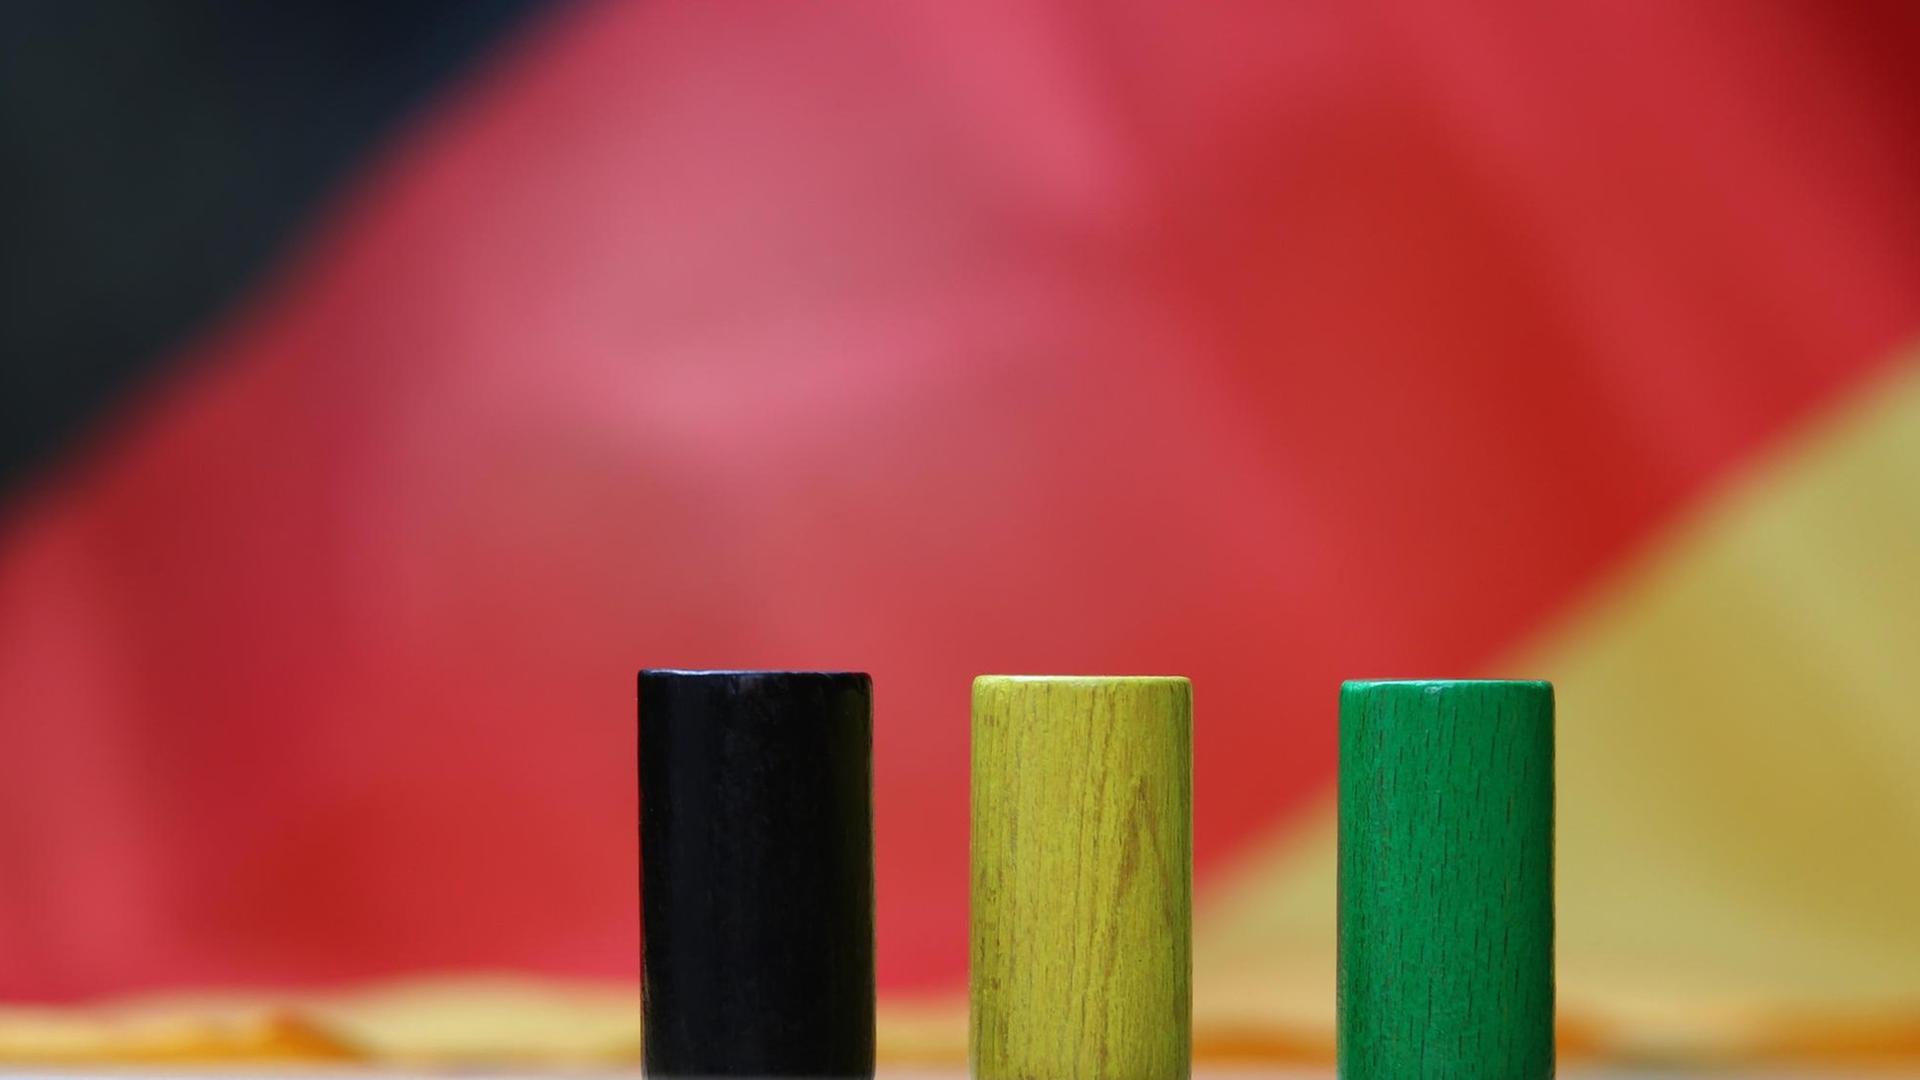 Drei hölzerne Spielsteine in den Farben Schwarz, Gelb und Grün stehen auf einer Deutschlandfahne.